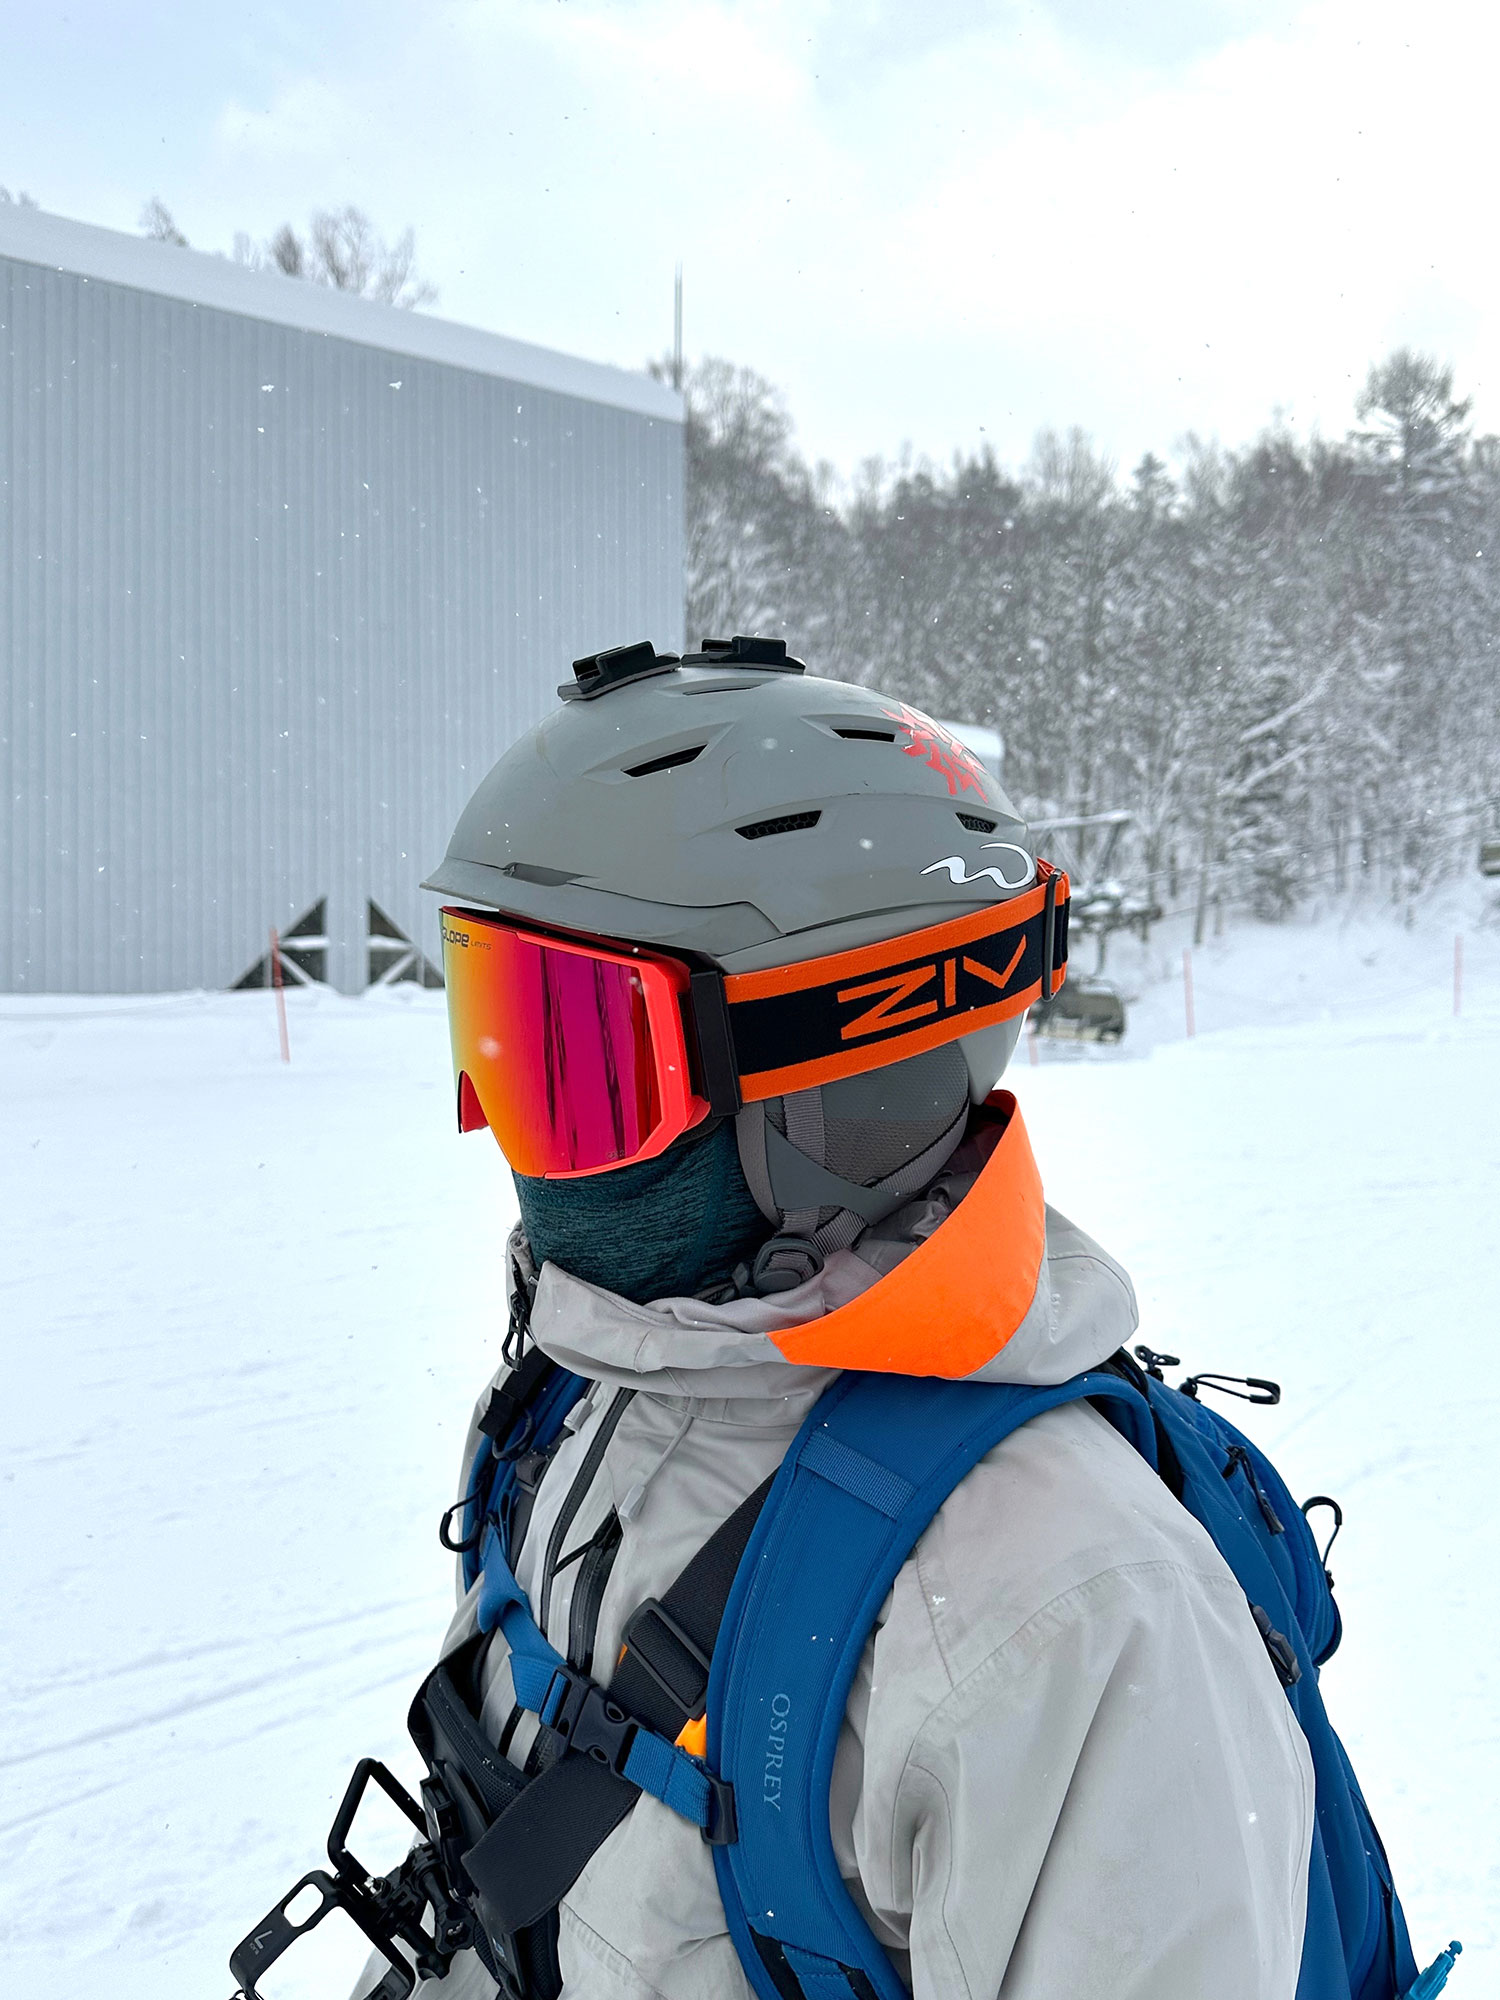 戴著橘色ZIV雪鏡的的滑雪者，身穿淺灰色的防寒衣，揹著藍色背包